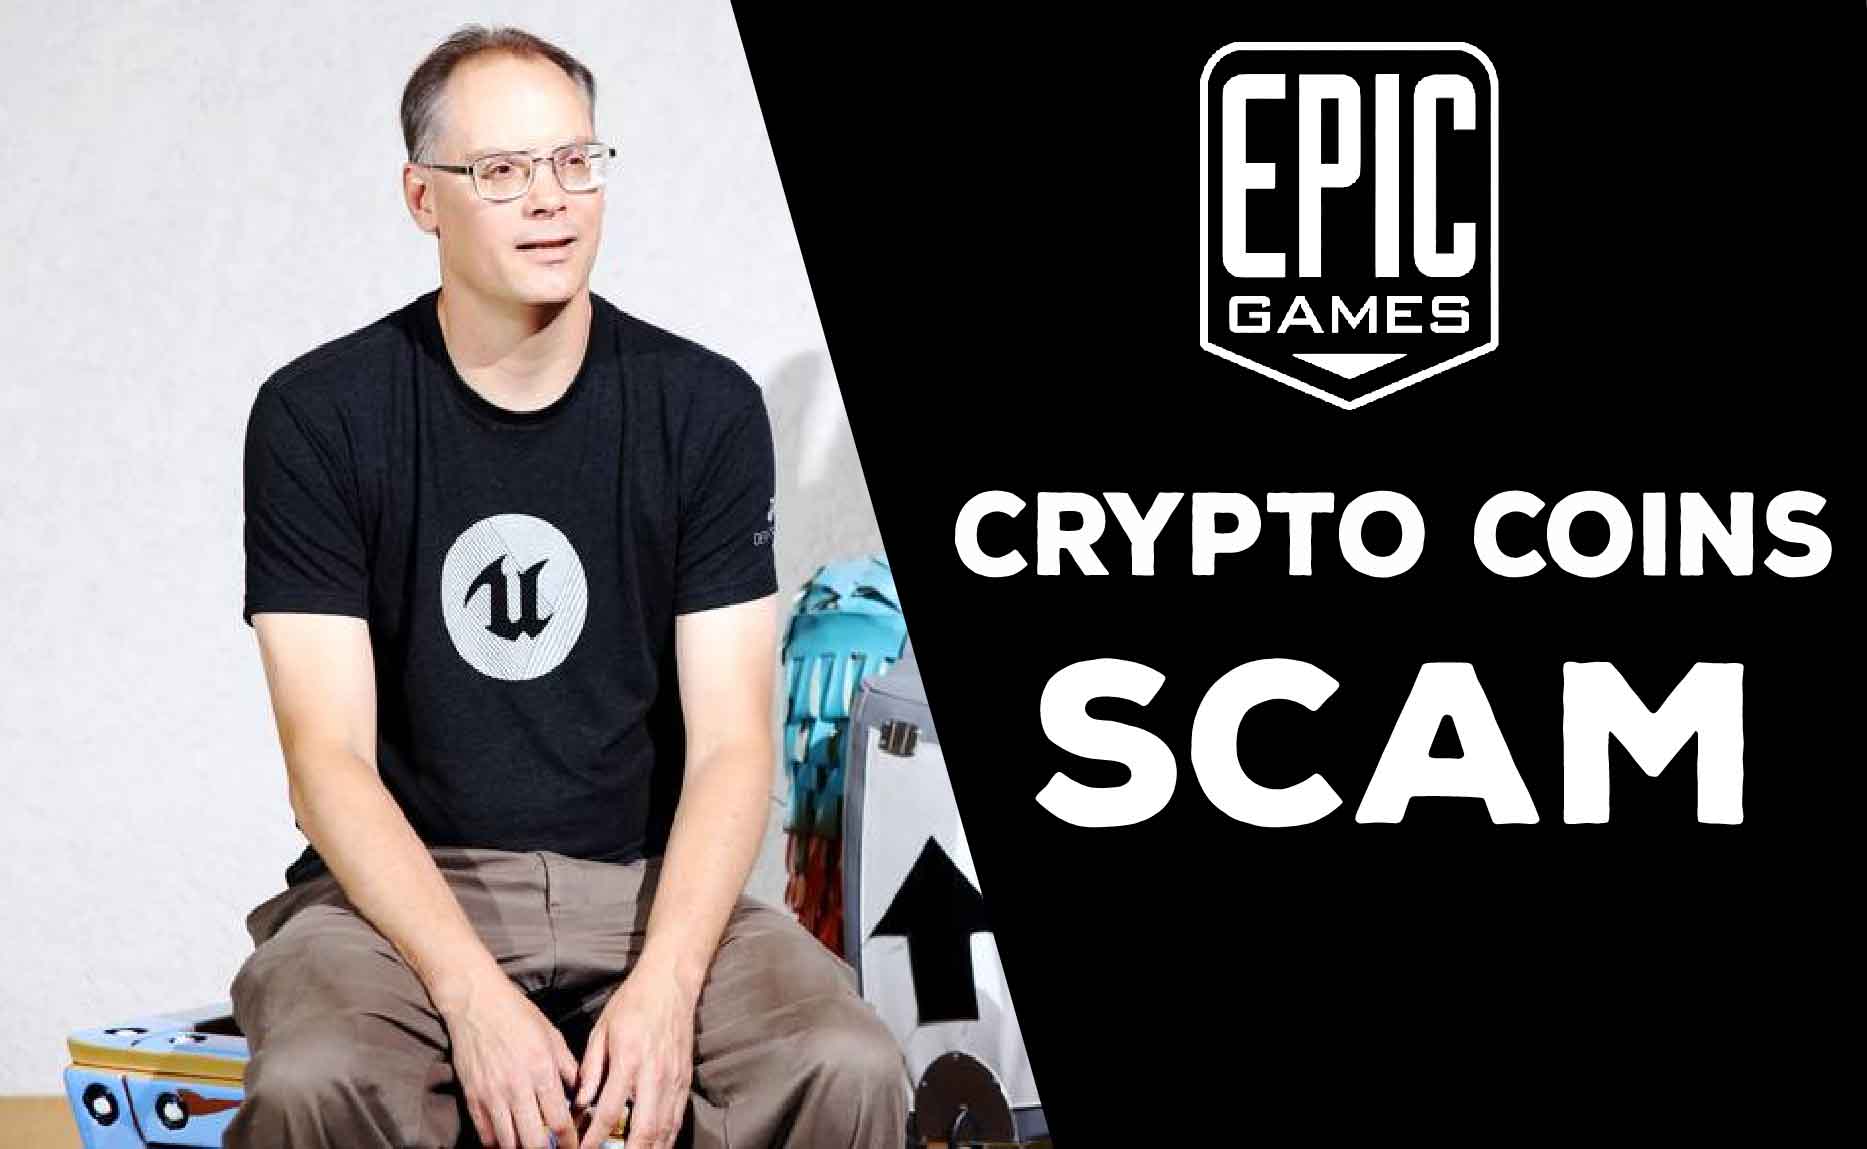 Epic Games ceo call Crypto coin a scam